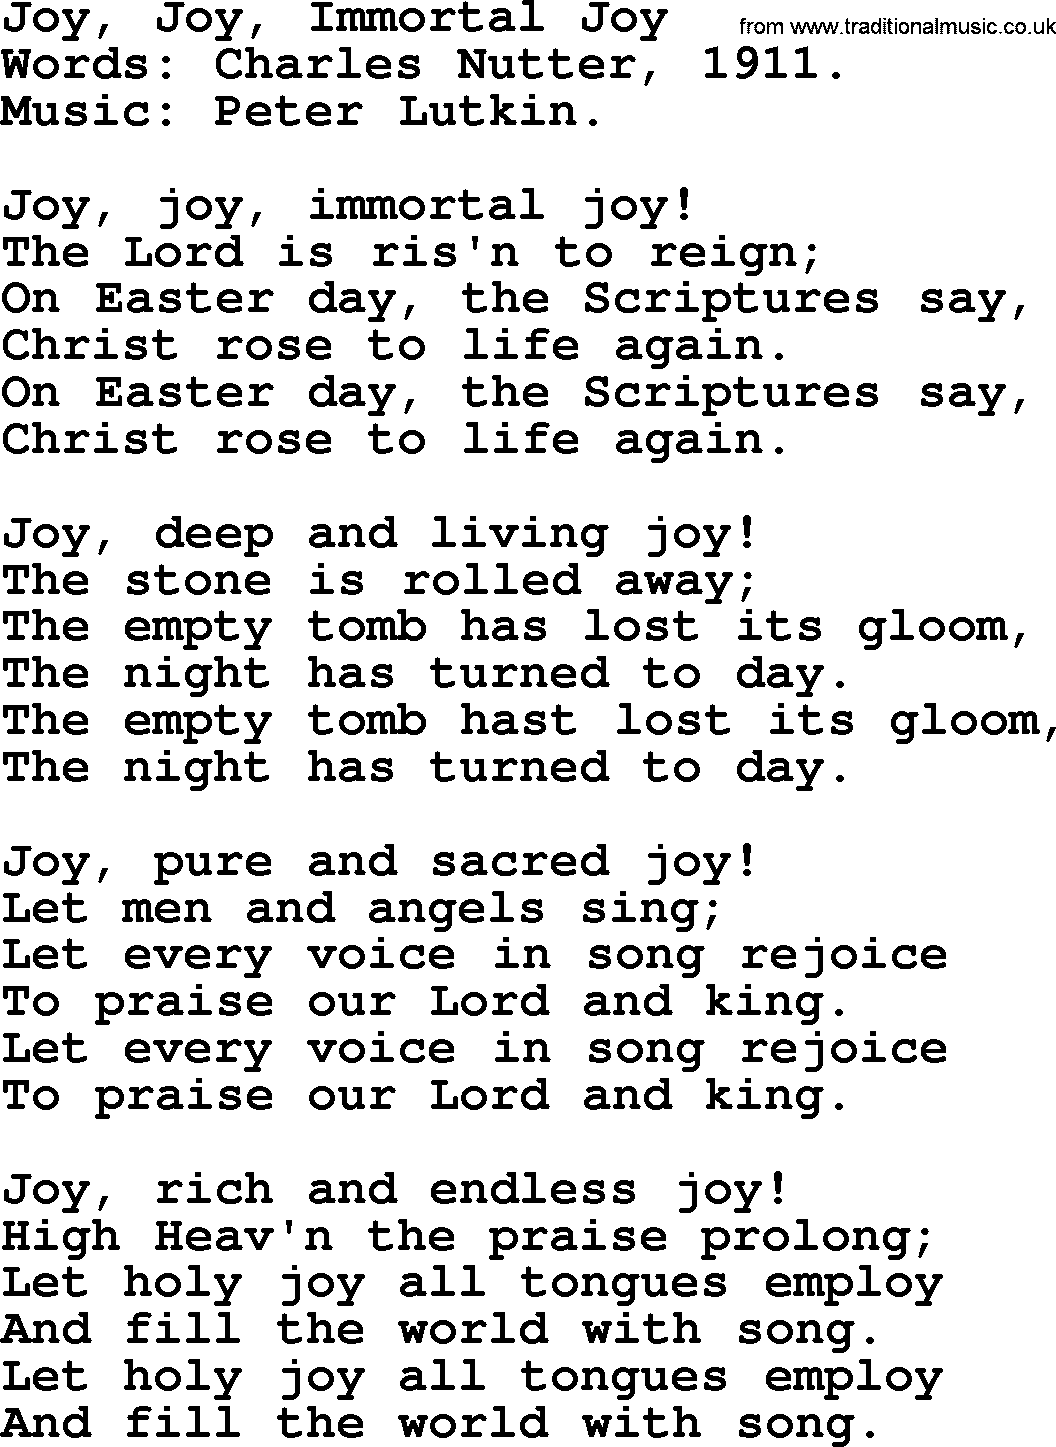 Easter Hymns, Hymn: Joy, Joy, Immortal Joy, lyrics with PDF